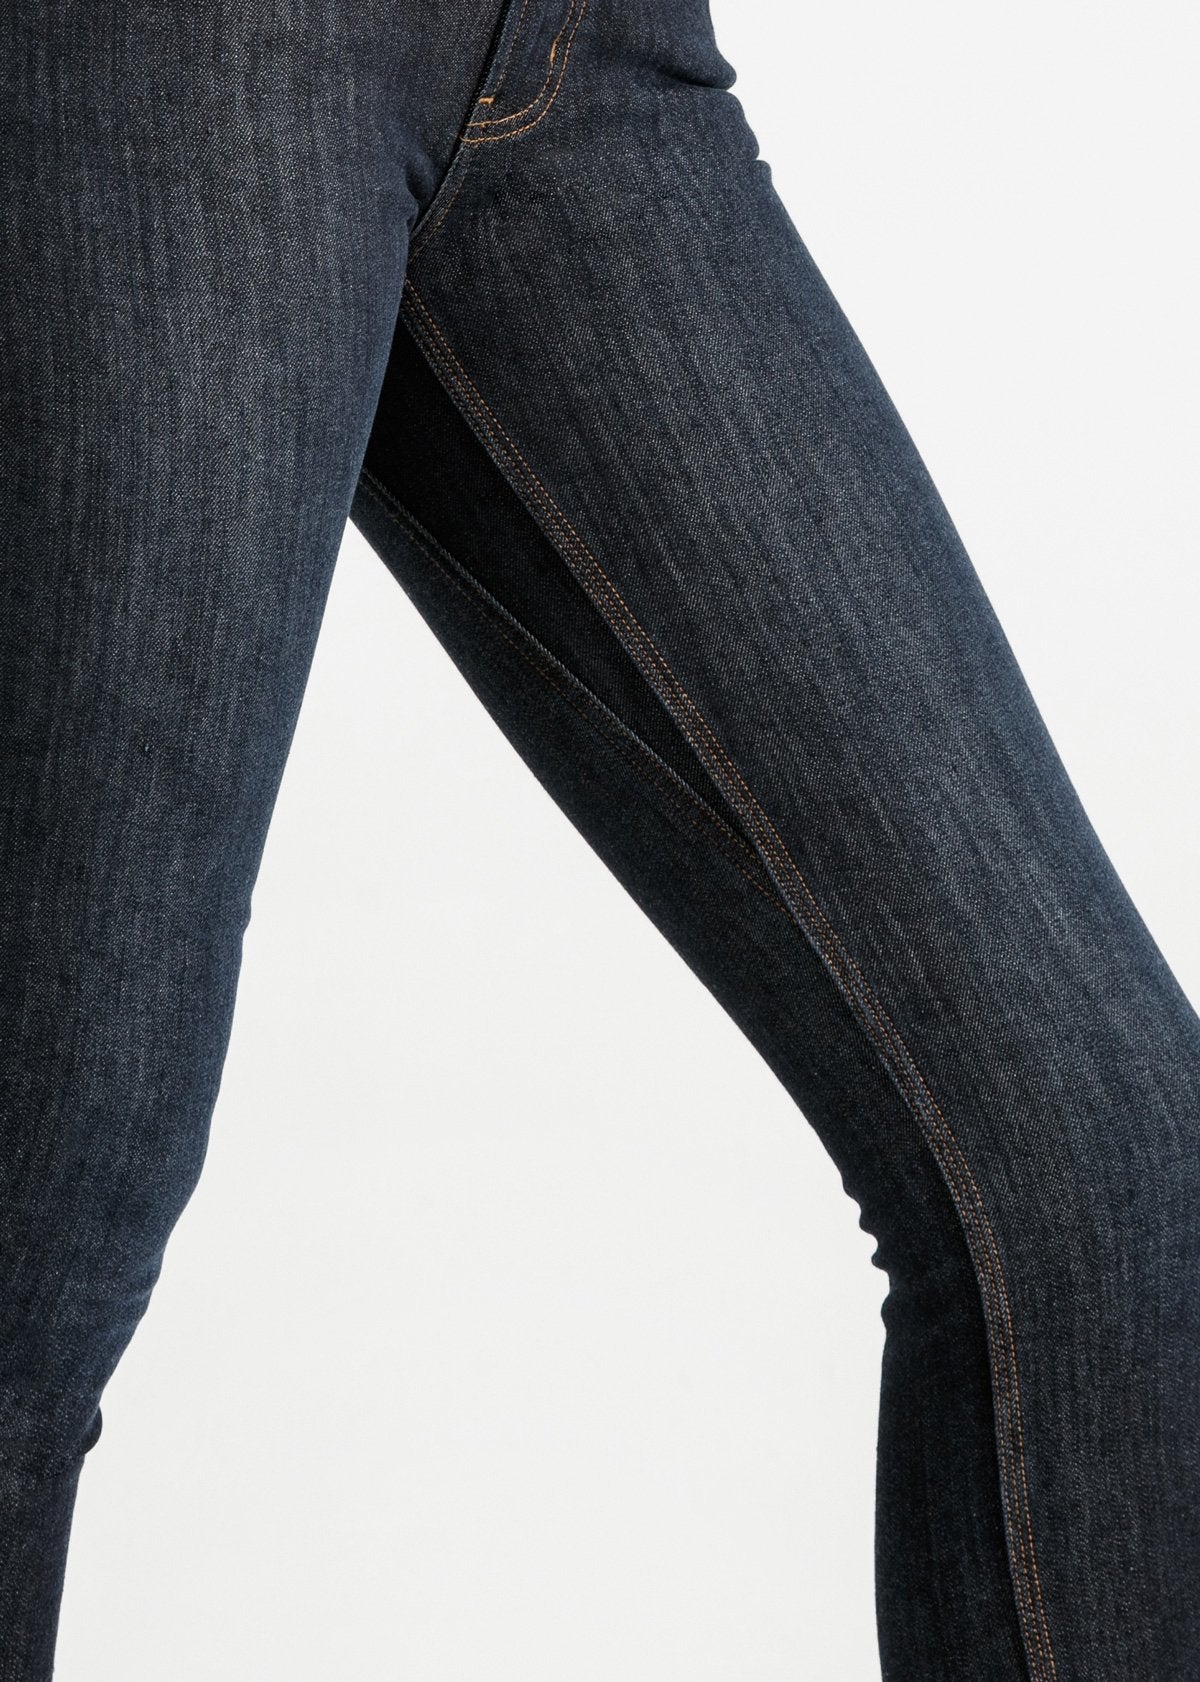 Lookbook Womens Winter Jeans Fleece Lined Slim Fit Stretch Warm